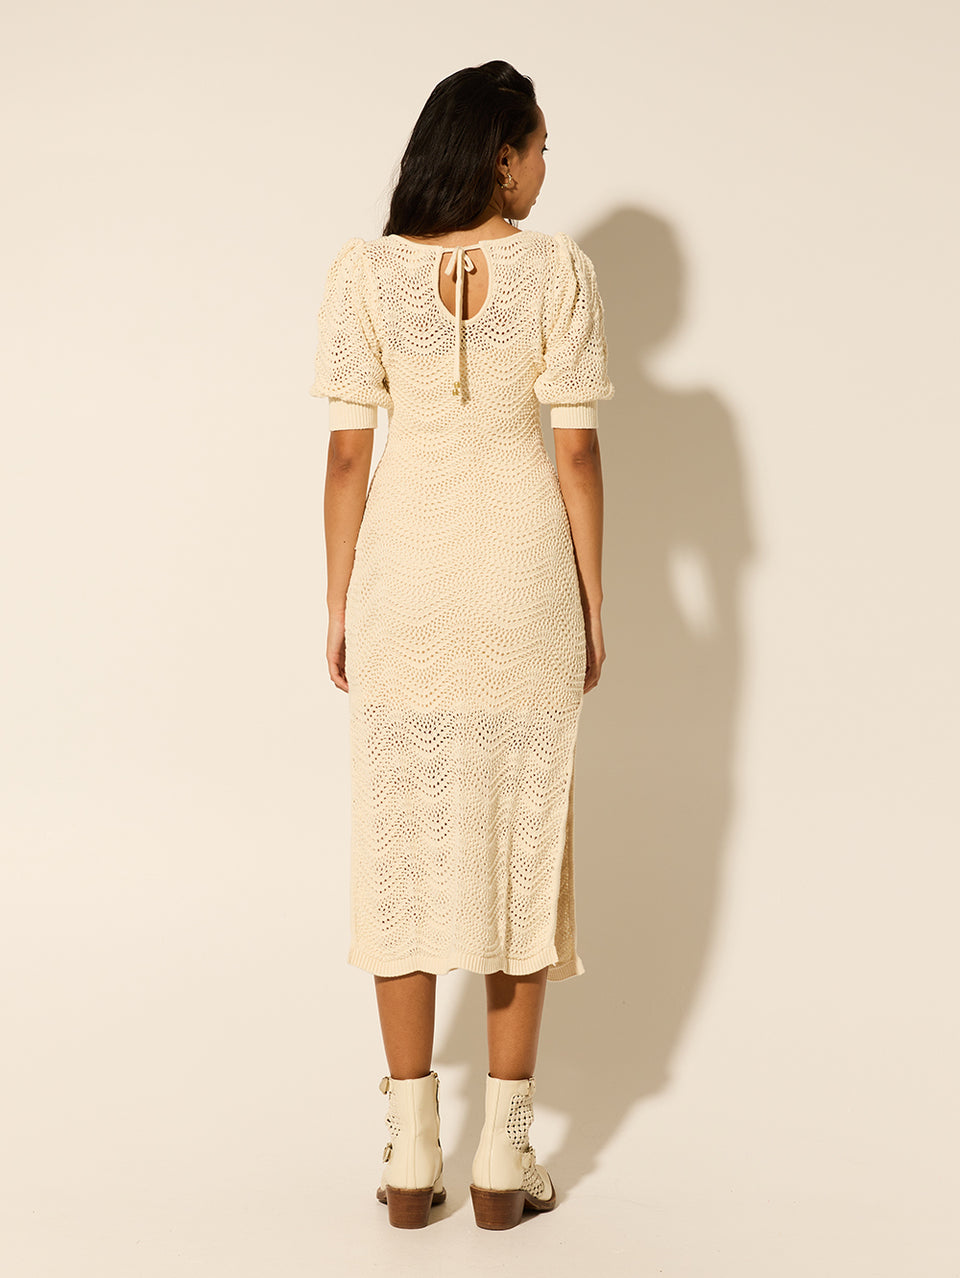 Mariana Knit Dress KIVARI | Model wears cream knit dress back view